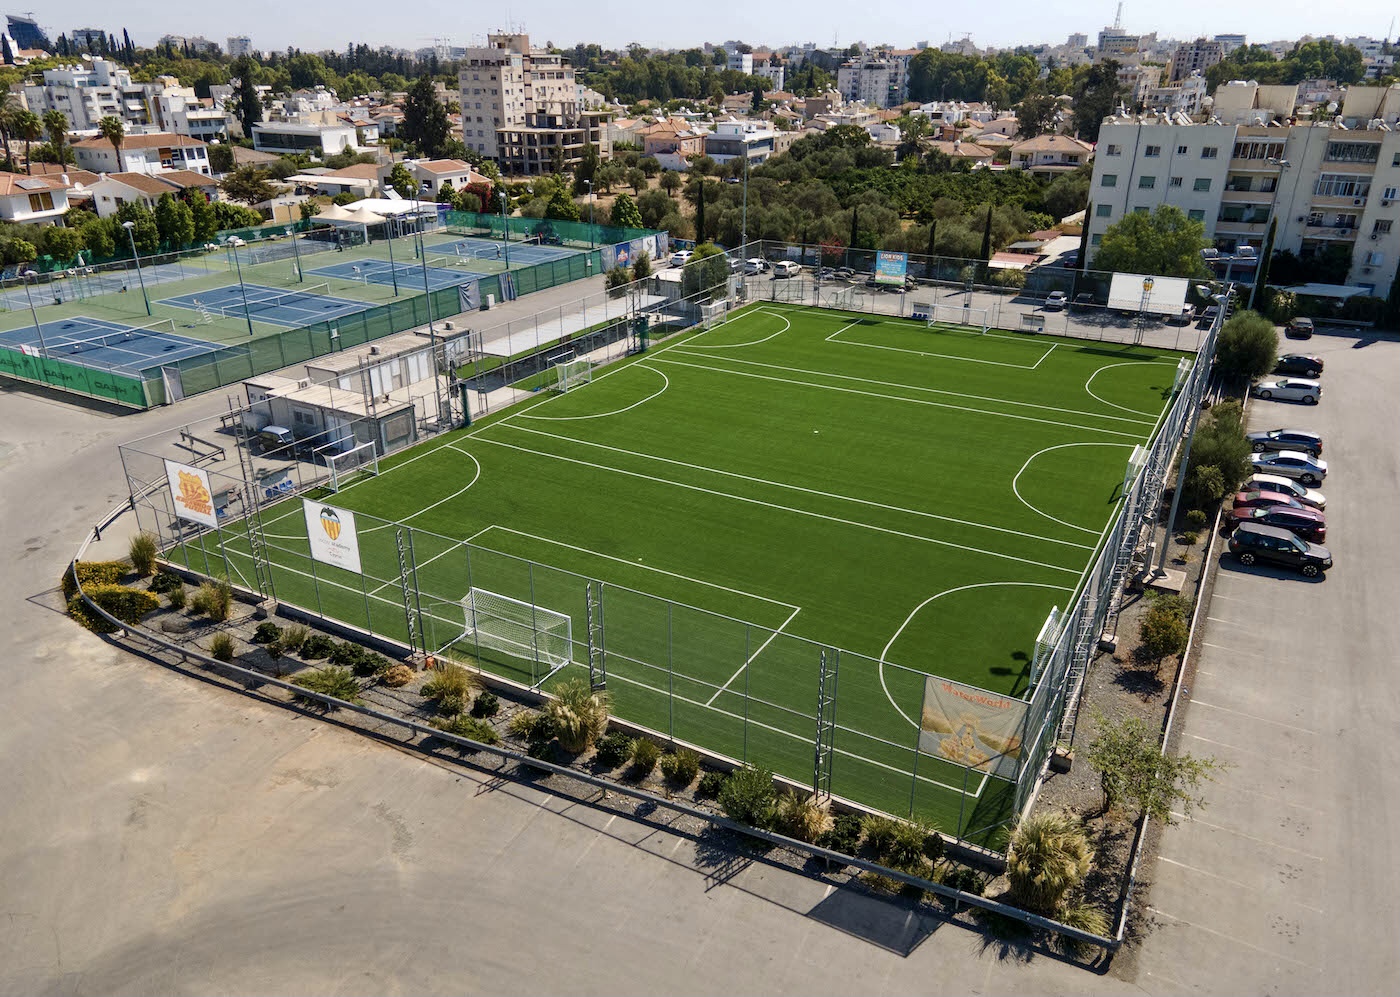 Keravnos Club Strovolou Sports Centre